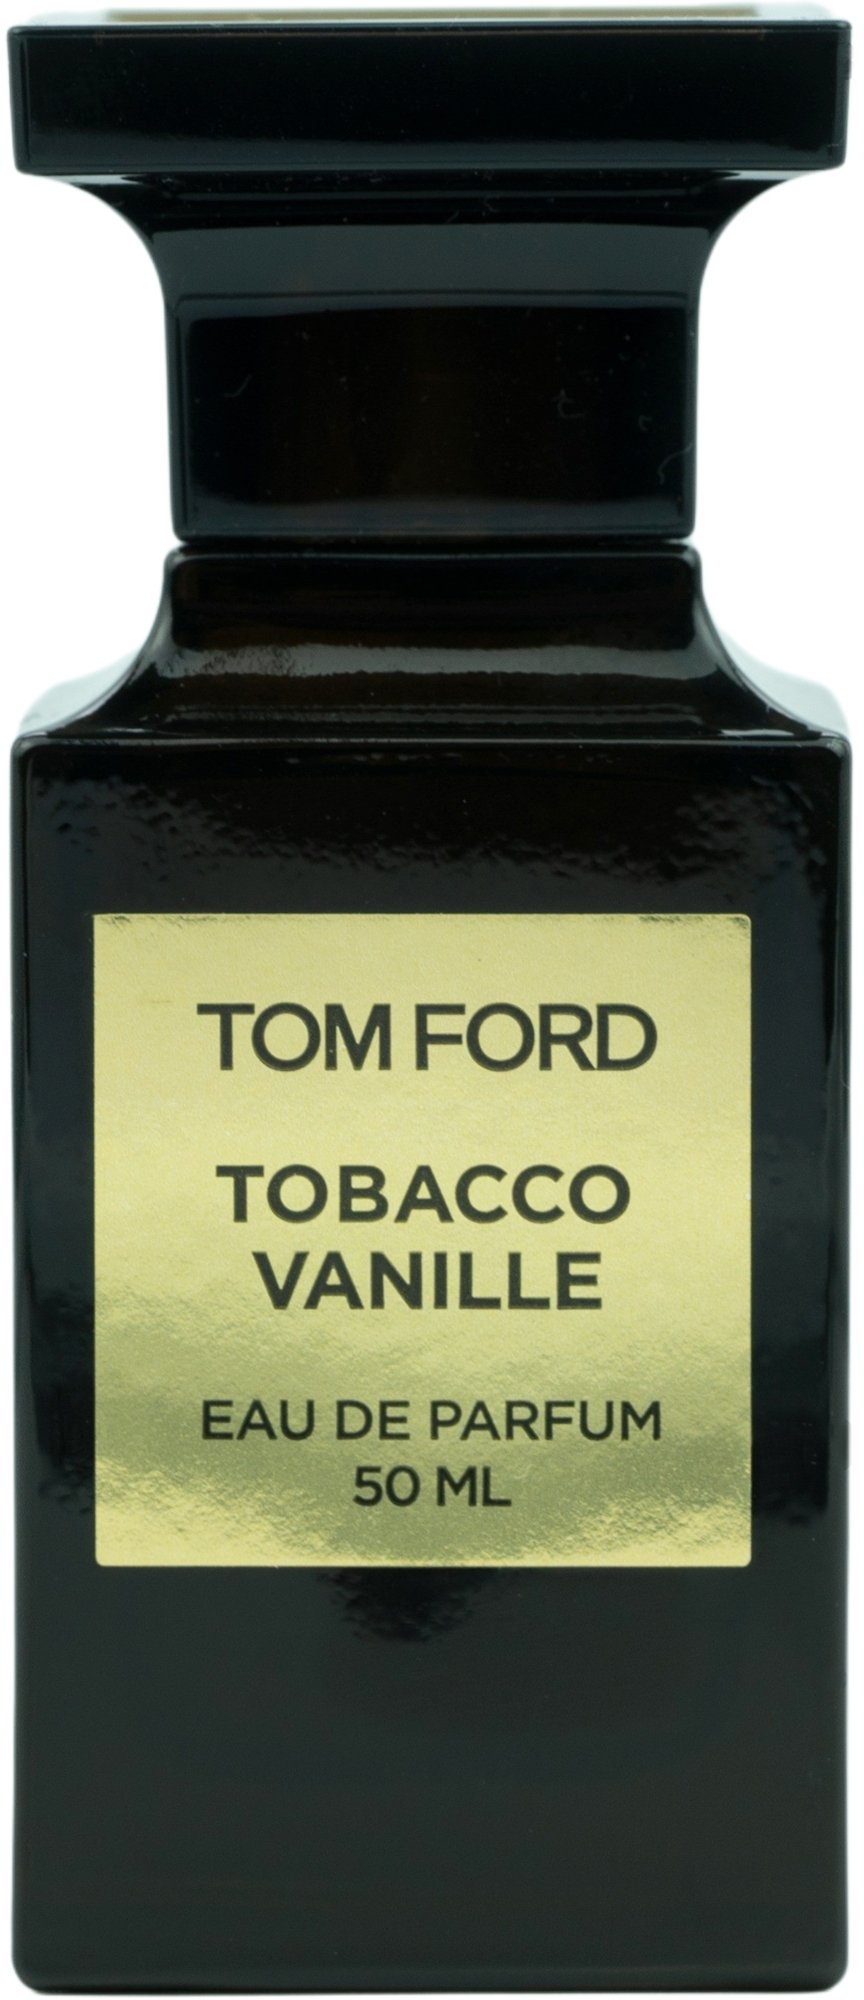 Bild von Tobacco Vanille Eau de Parfum 100 ml